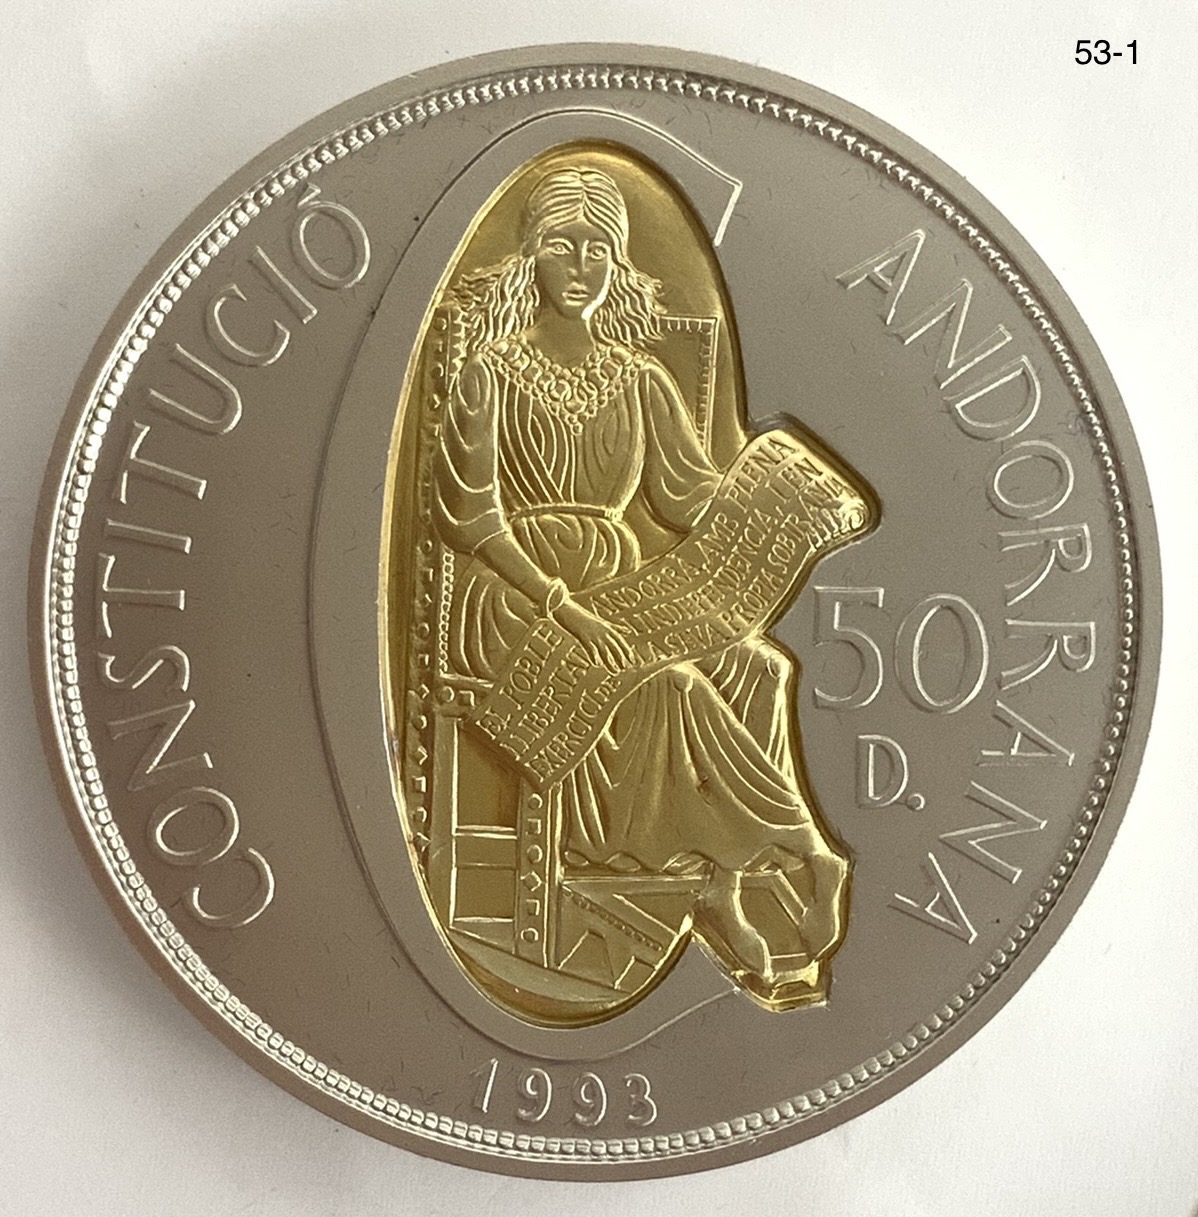 アンドラ-Andorra. 未使用. 新憲法制定 50ディナール金・銀2色貨 1993